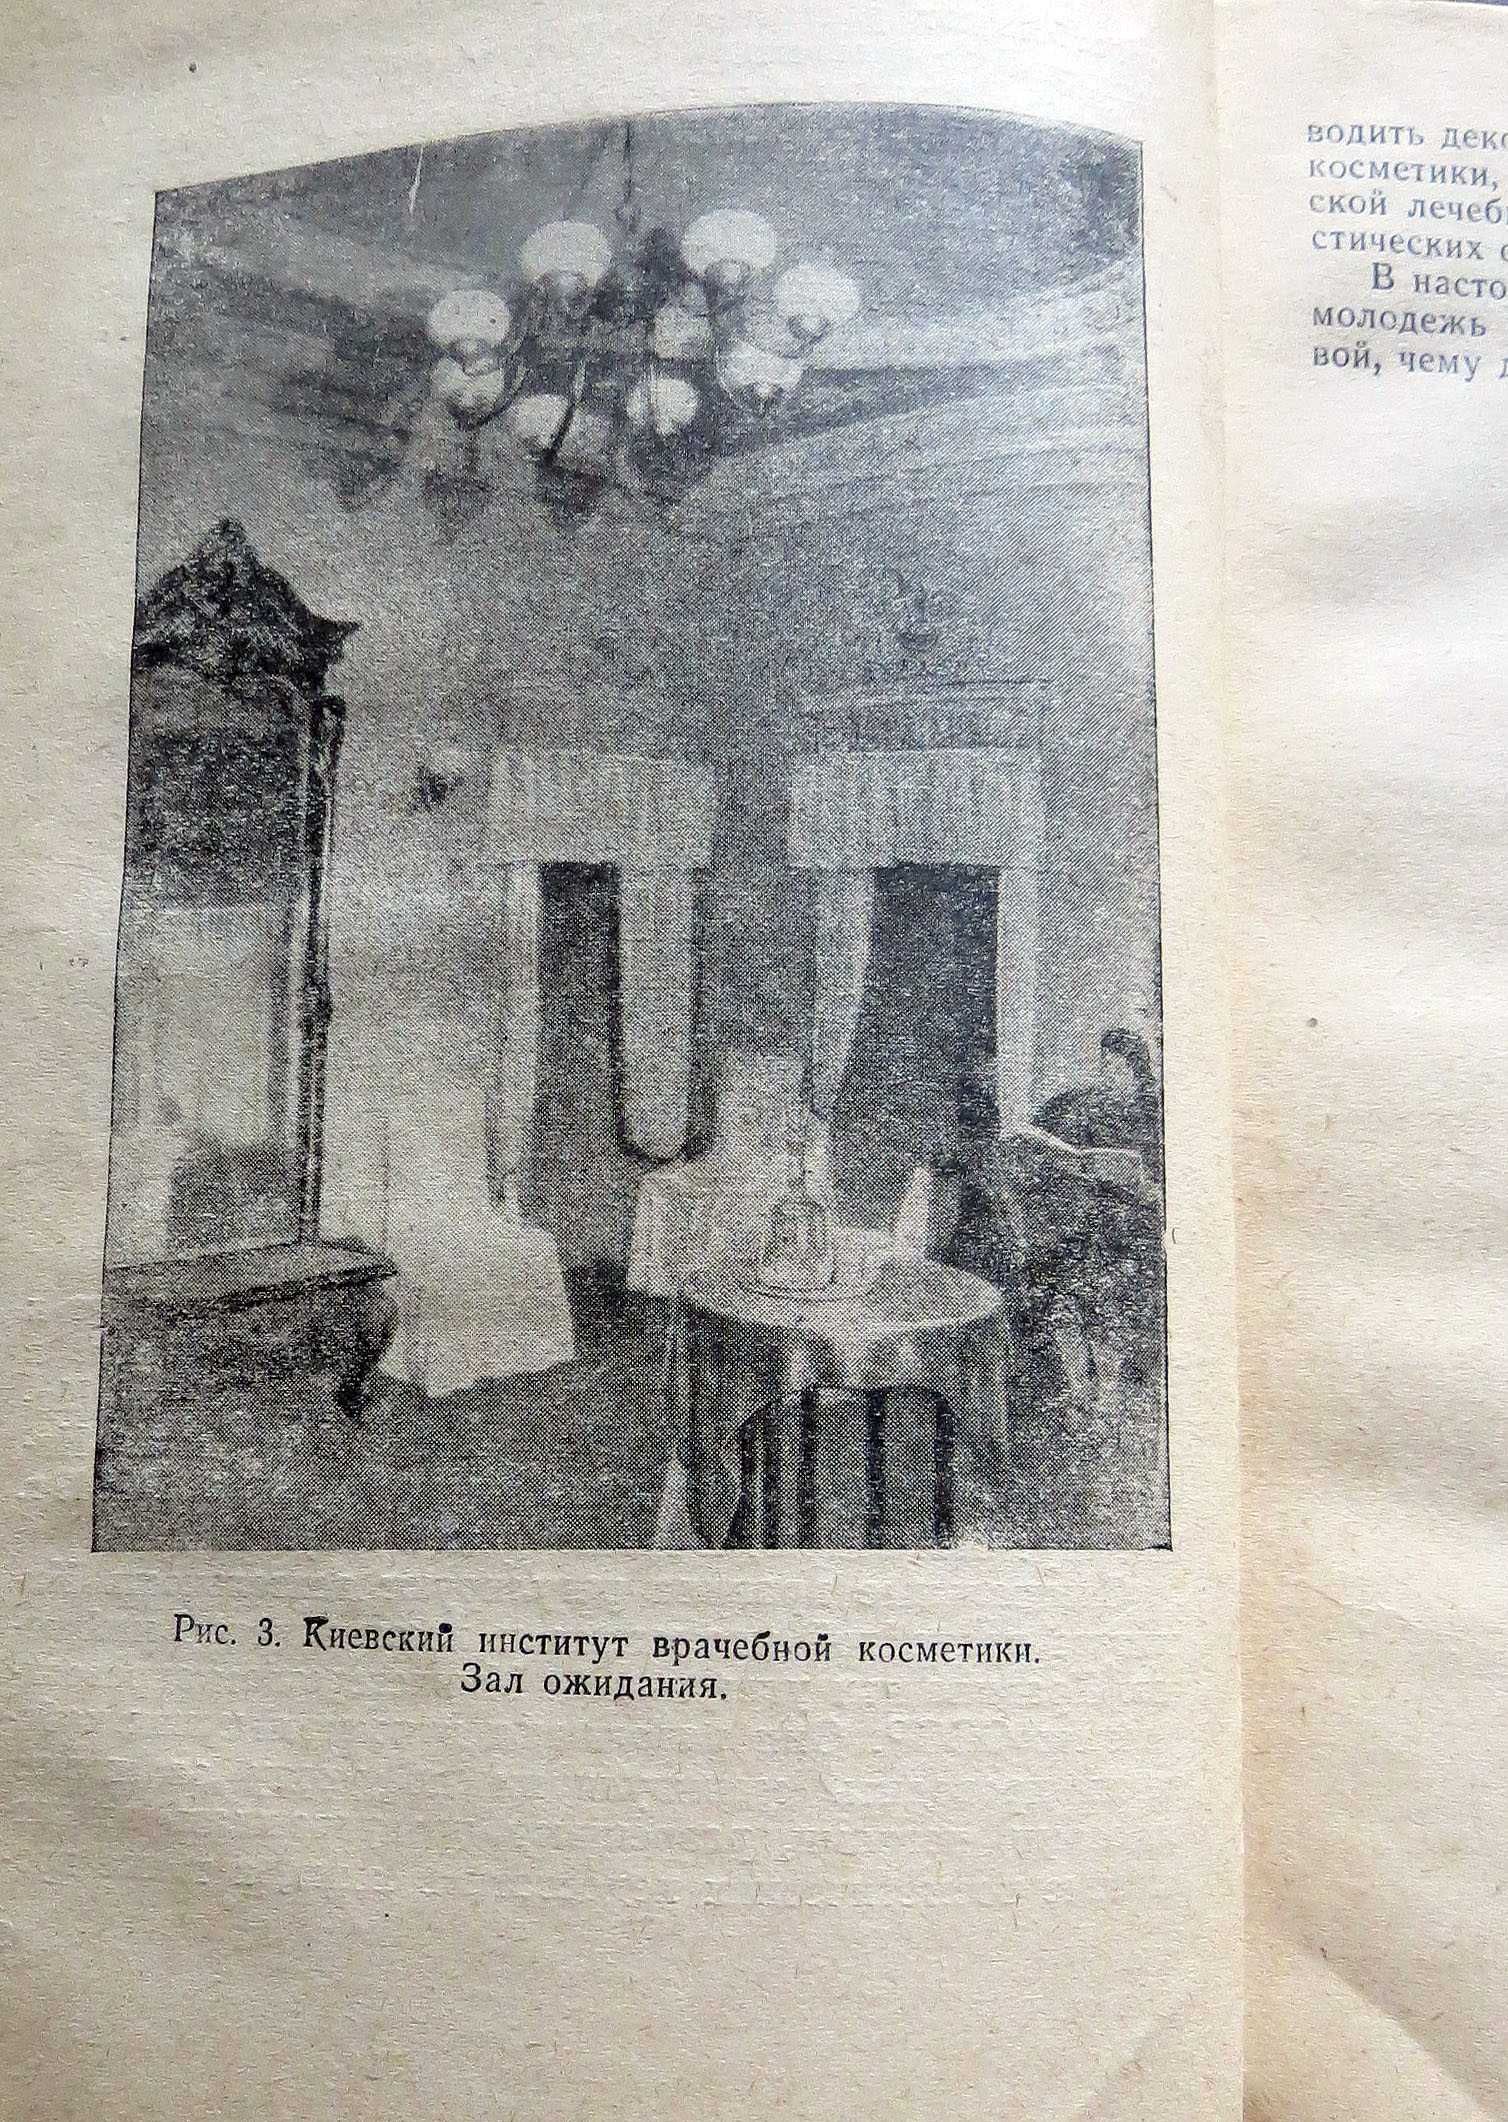 Косметический уход за кожей. Картамышев, Арнольд. 1964